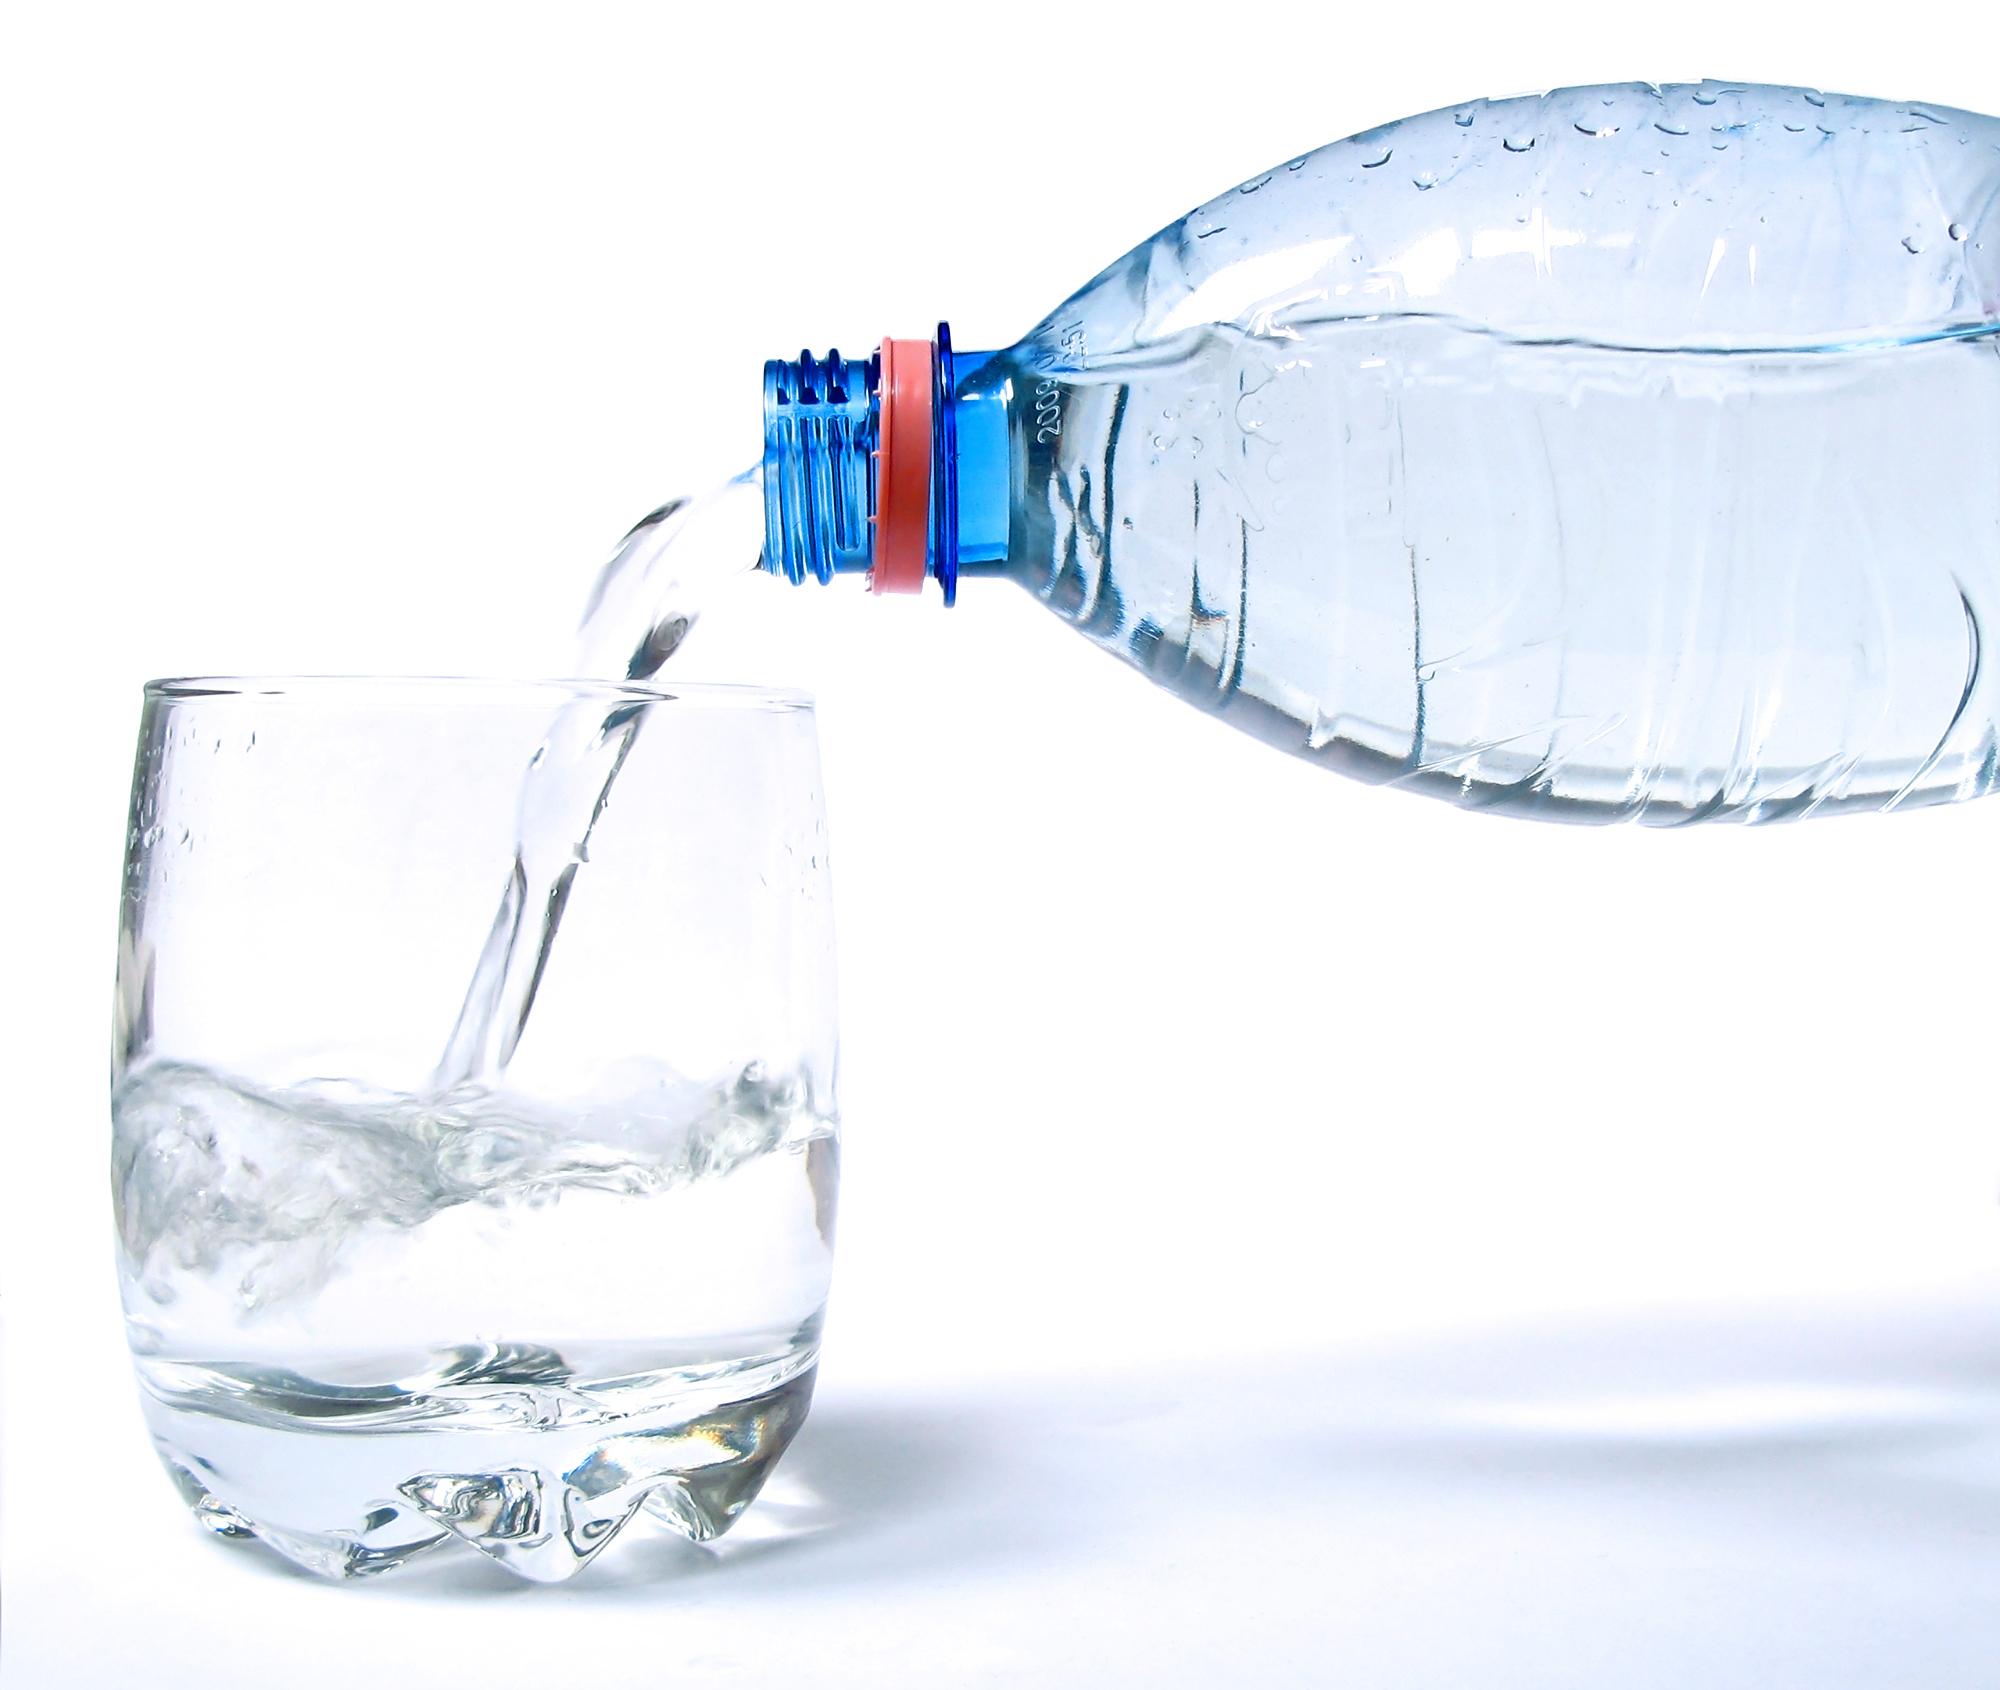 Https cick su. Бутылка для воды. Вода из бутылки. Минералка в стакане. Вода льется.